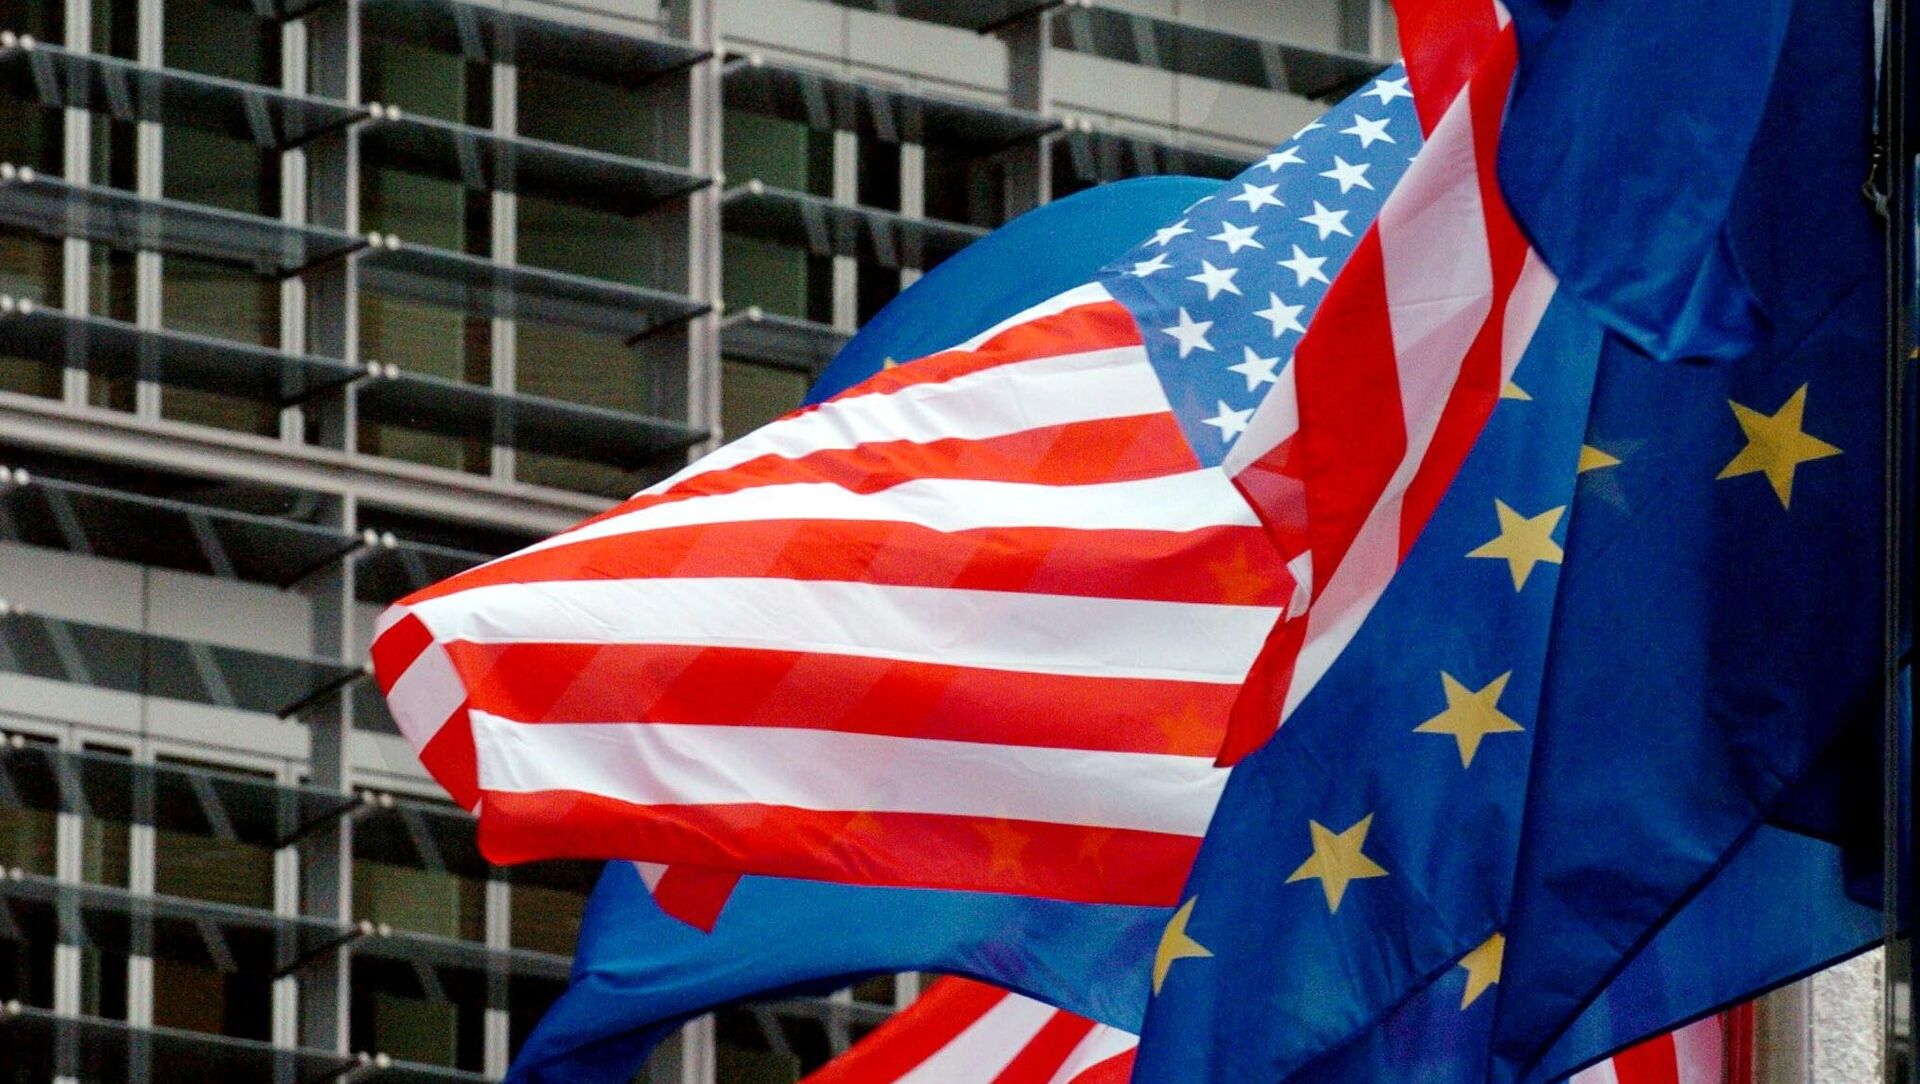 САД и европске заставе лебде испред седишта Европске комисије у Бриселу  - Sputnik Србија, 1920, 25.05.2021